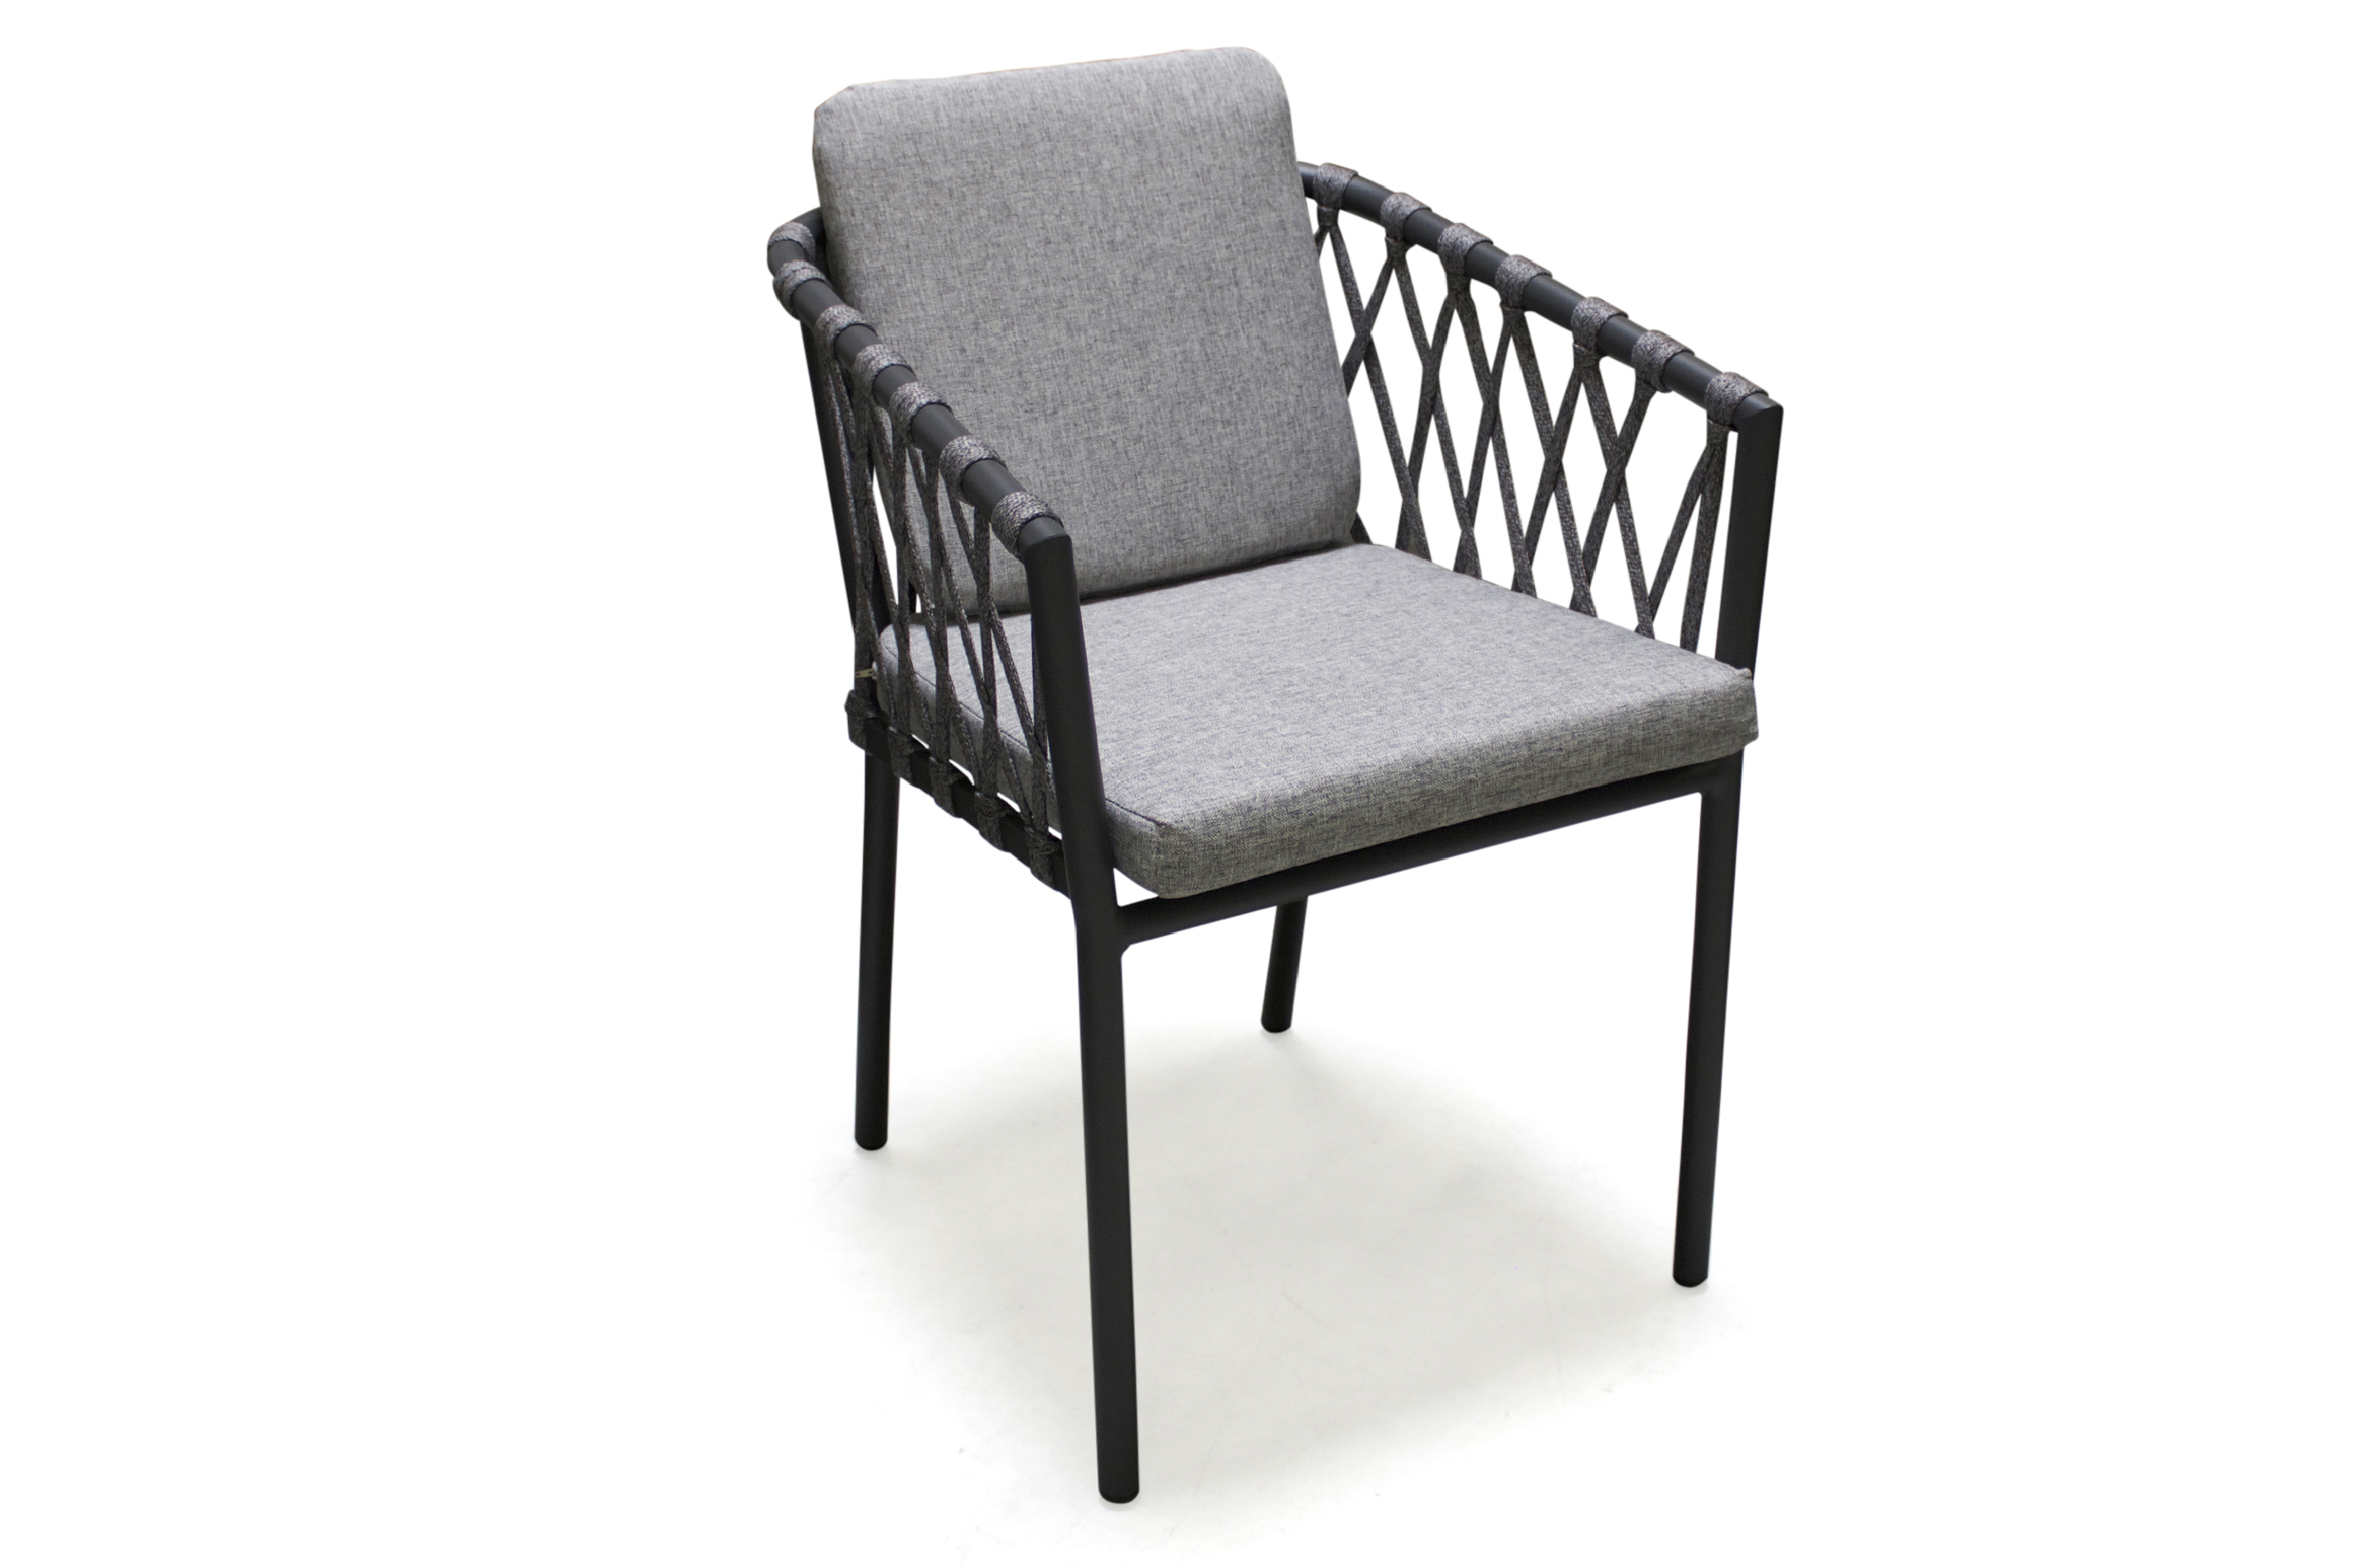 fauteuil en aluminium et corde gris anthracite